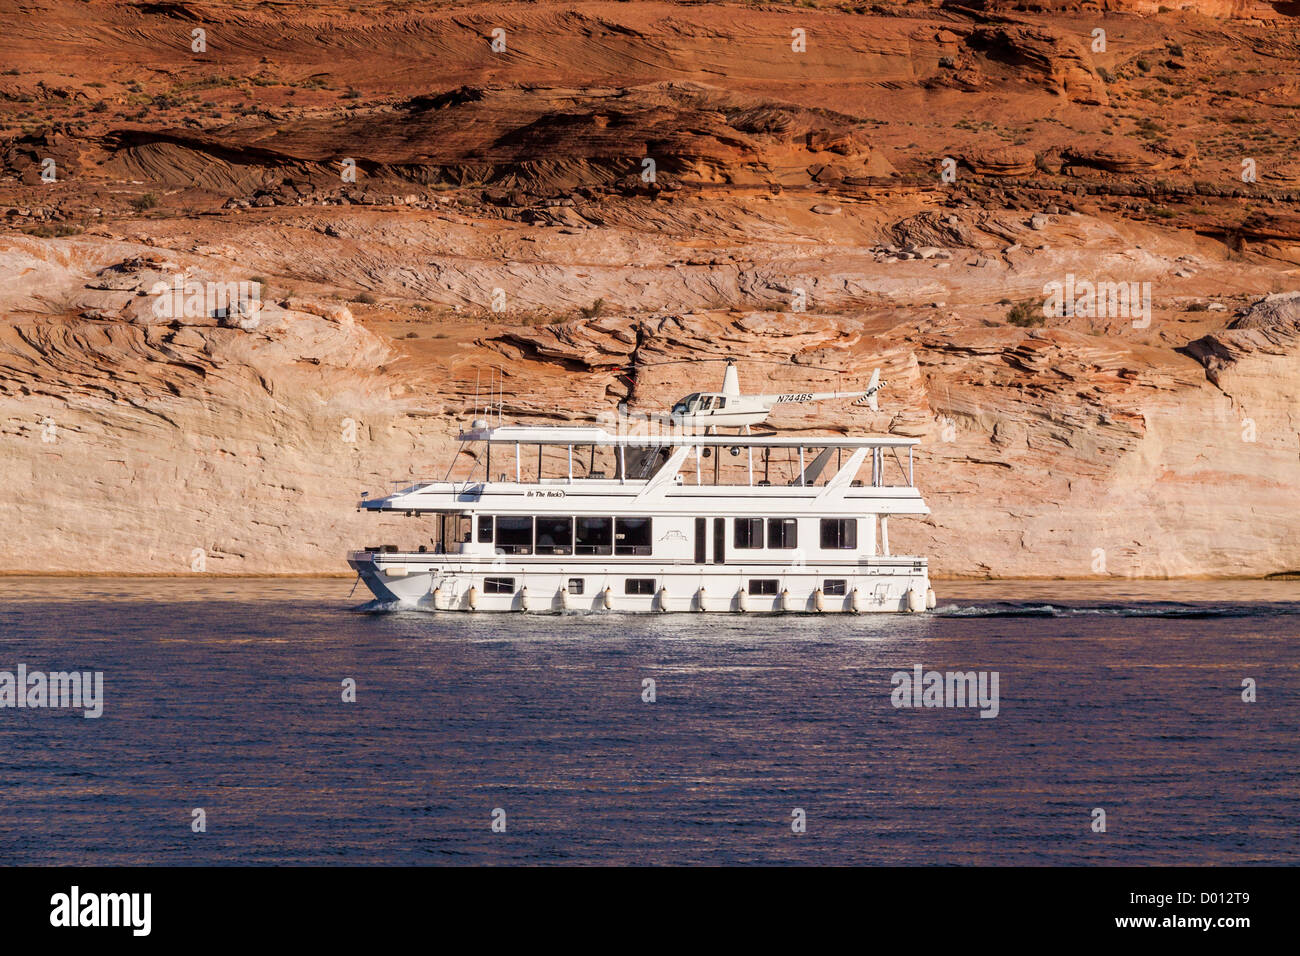 Lake Powell und der Glen Canyon NRA, die sich über eine Million Acres mit etwa 2000 Meilen Küstenlinie in Arizona und Utah erstreckt. Hausboot mit Hubschrauberlandeplatz. Stockfoto